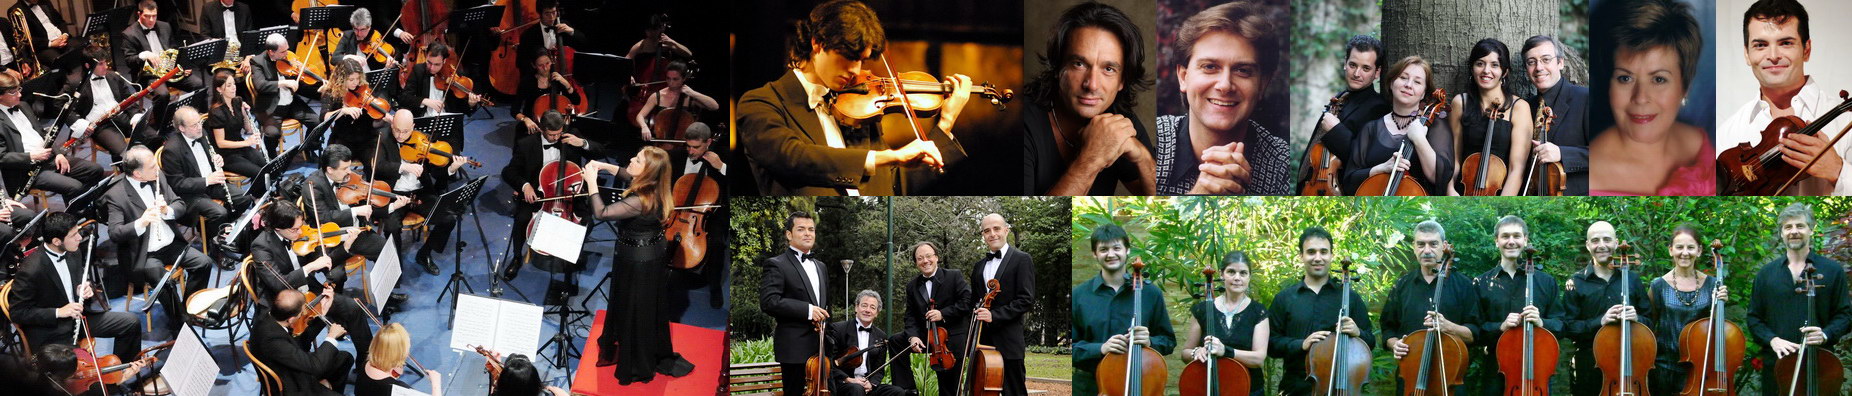 Temporada 2013: Orq. de La Bella Música, Xavier Inchausti y artistas de las Soirées Musicales